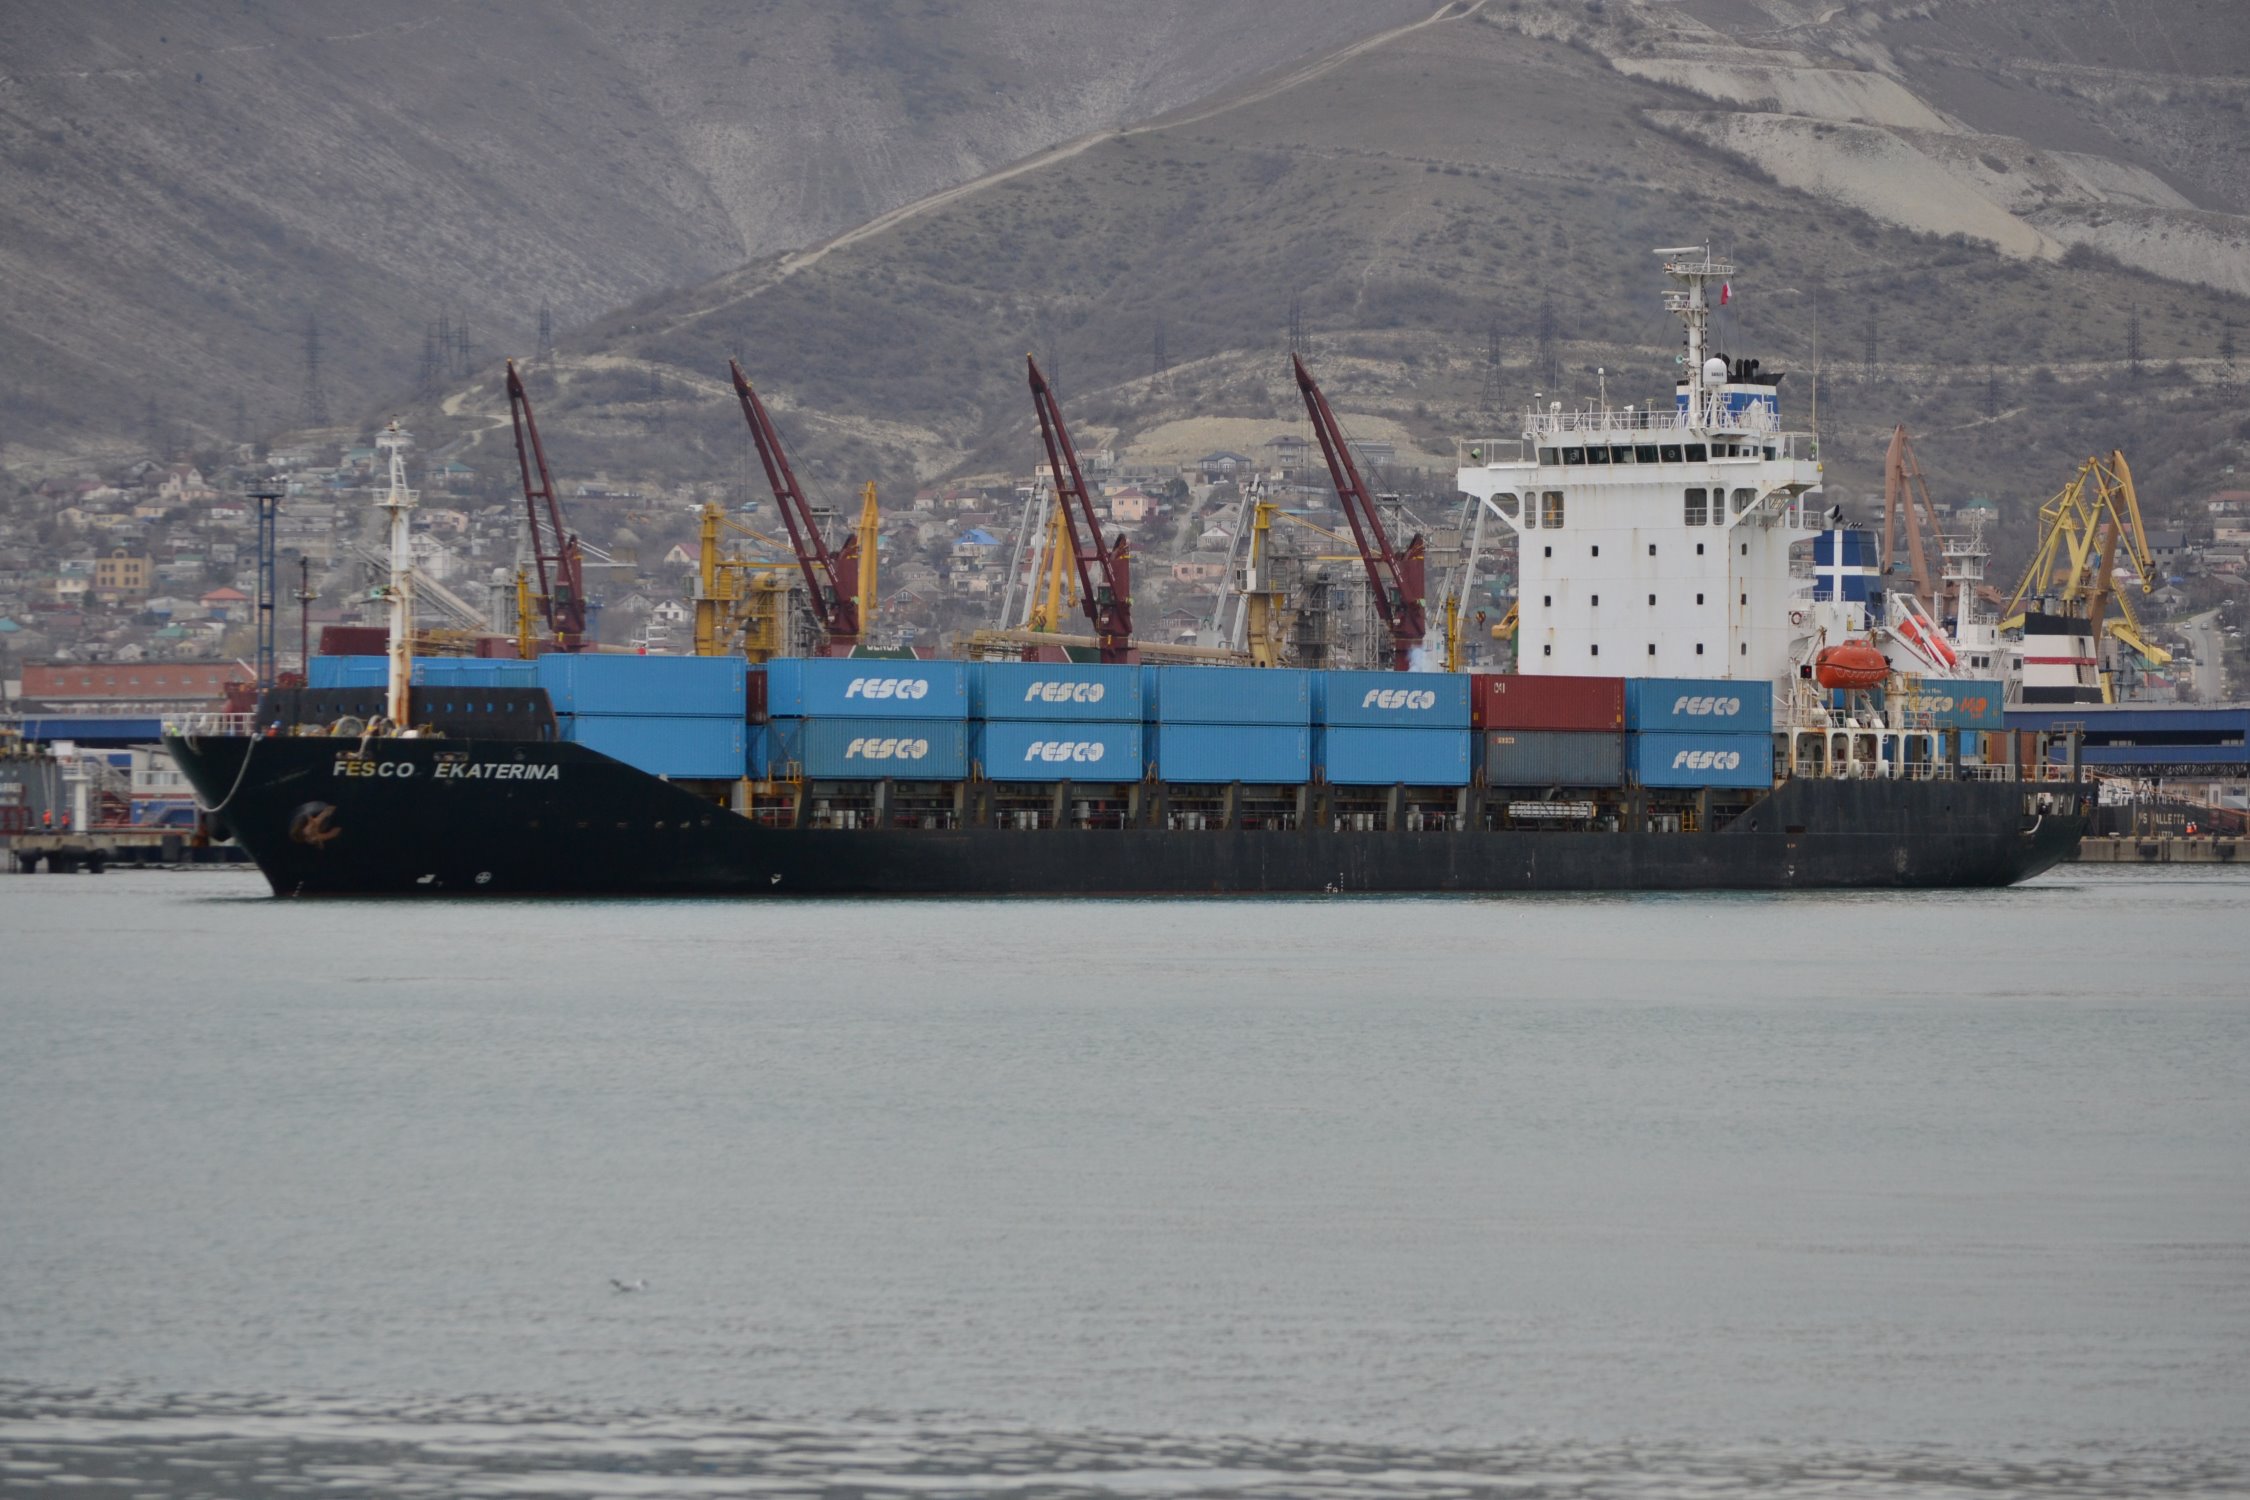 FESCO добавила новые фидерные порты в рамках морского сервиса между Индией и Новороссийском